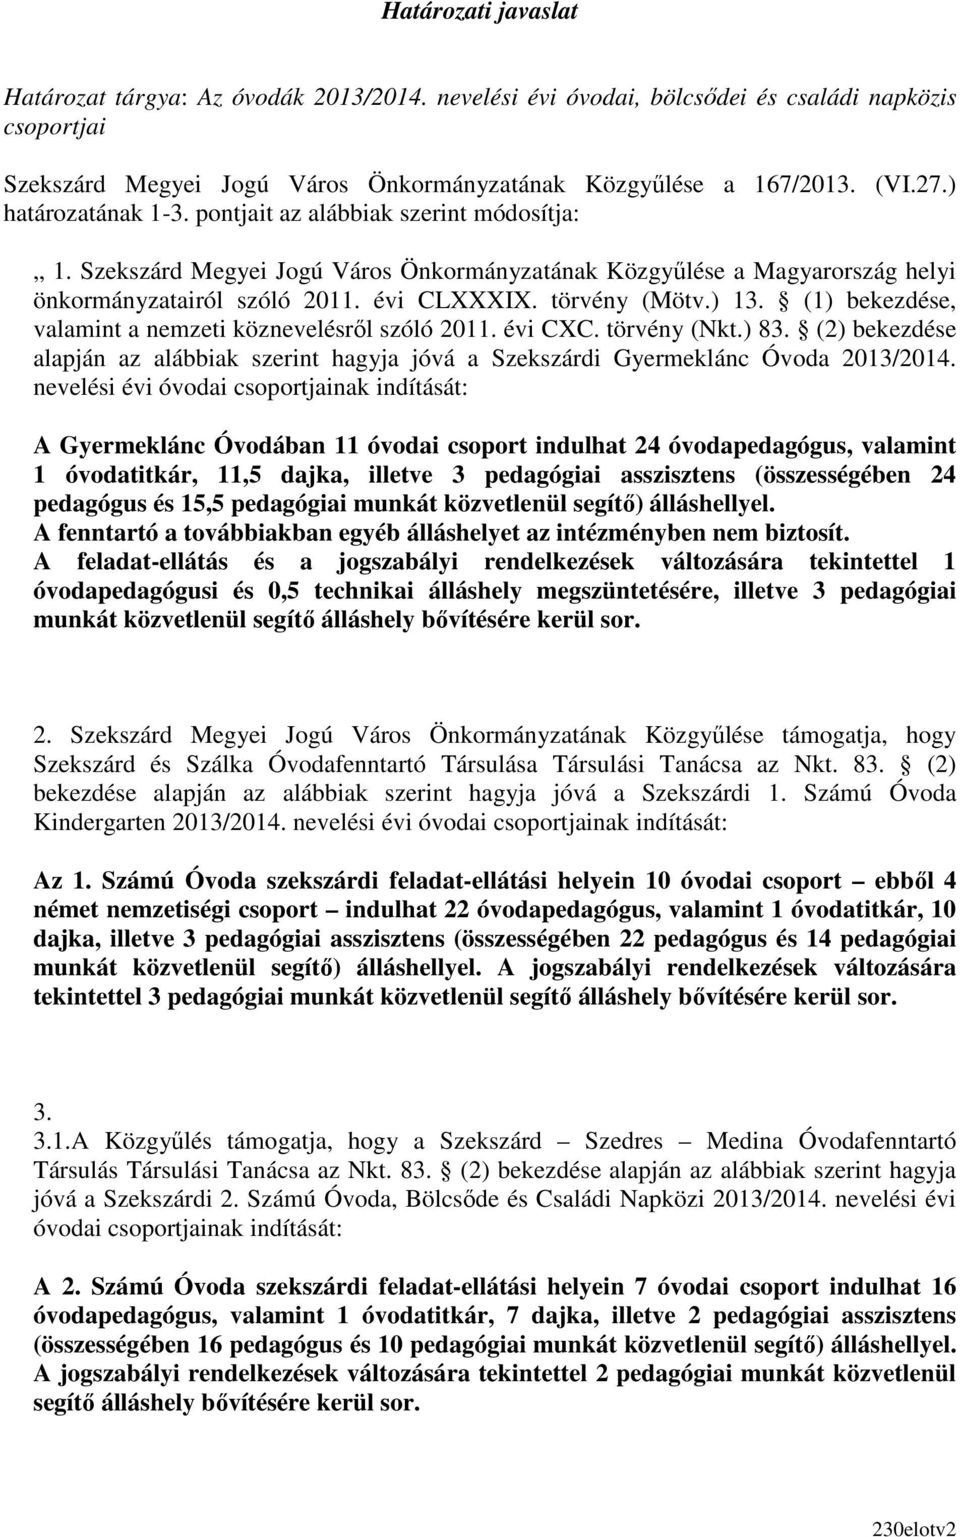 ) 13. (1) bekezdése, valamint a nemzeti köznevelésrıl szóló 2011. évi CXC. törvény (Nkt.) 83. (2) bekezdése alapján az alábbiak szerint hagyja jóvá a Szekszárdi Gyermeklánc Óvoda 2013/2014.